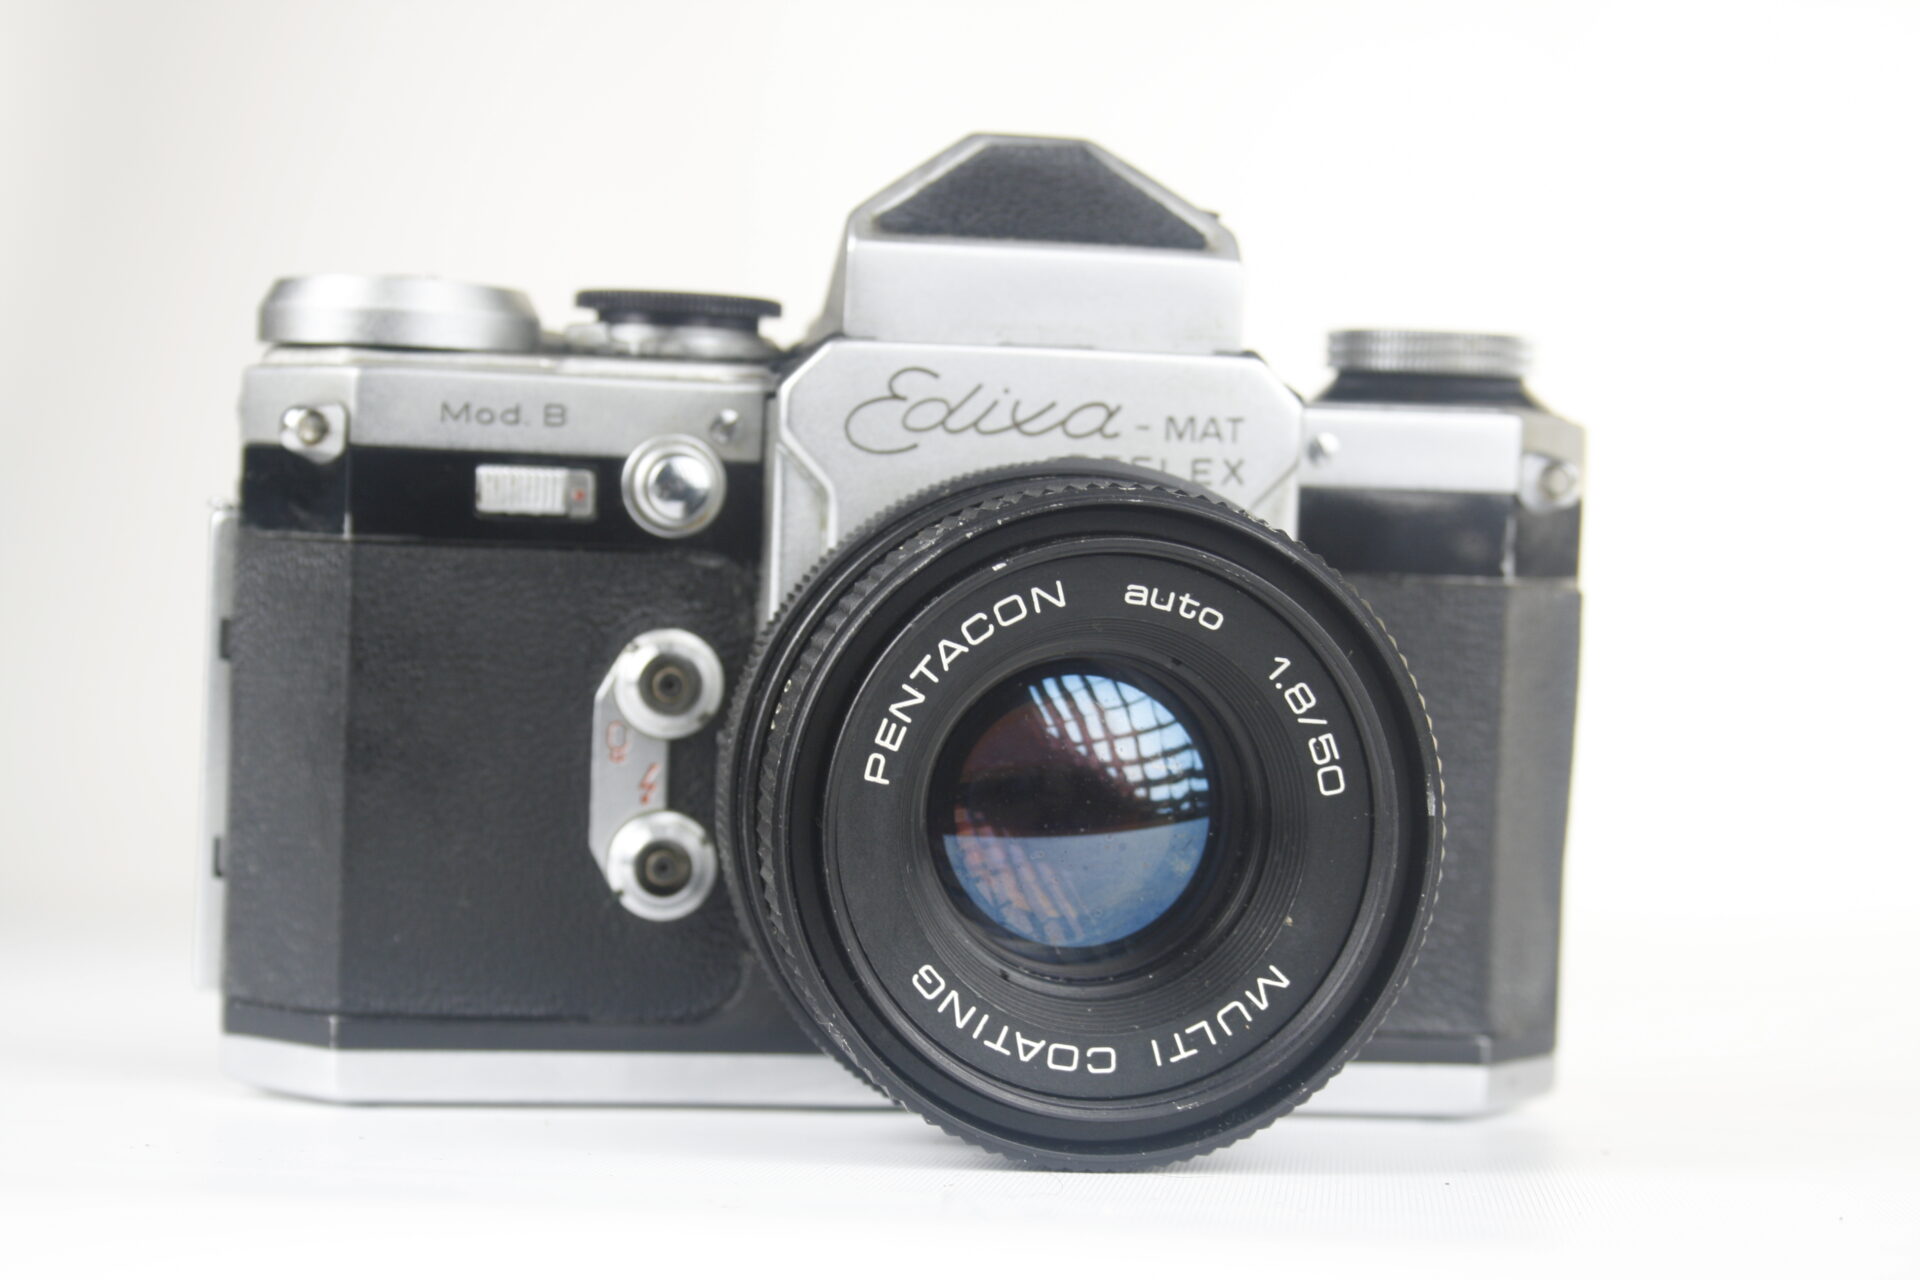 Edixa-mat Reflex Model B. Wirgin. 35mm SLR camera. 1956. Duitsland